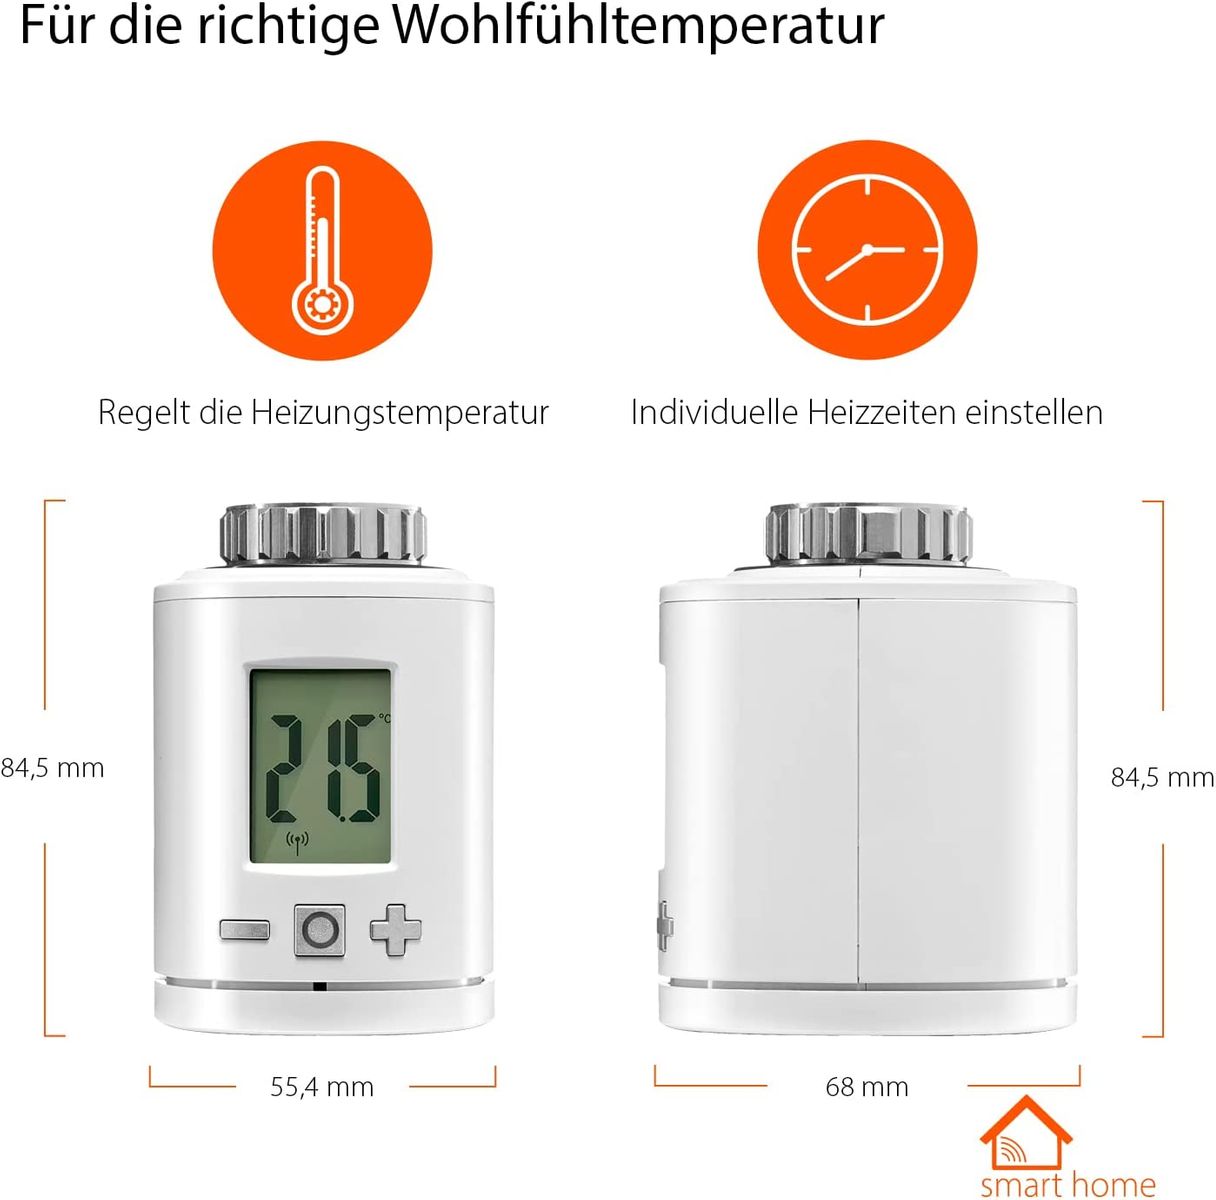 Gigaset Thermostat ONE X - Smart Home Erweiterung - Heizkörperthermostat für ein angenehmes Raumklima - regelt die Heizungstemperatur - spart Heizkosten - Home Connect Plus, Base erforderlich, weiß